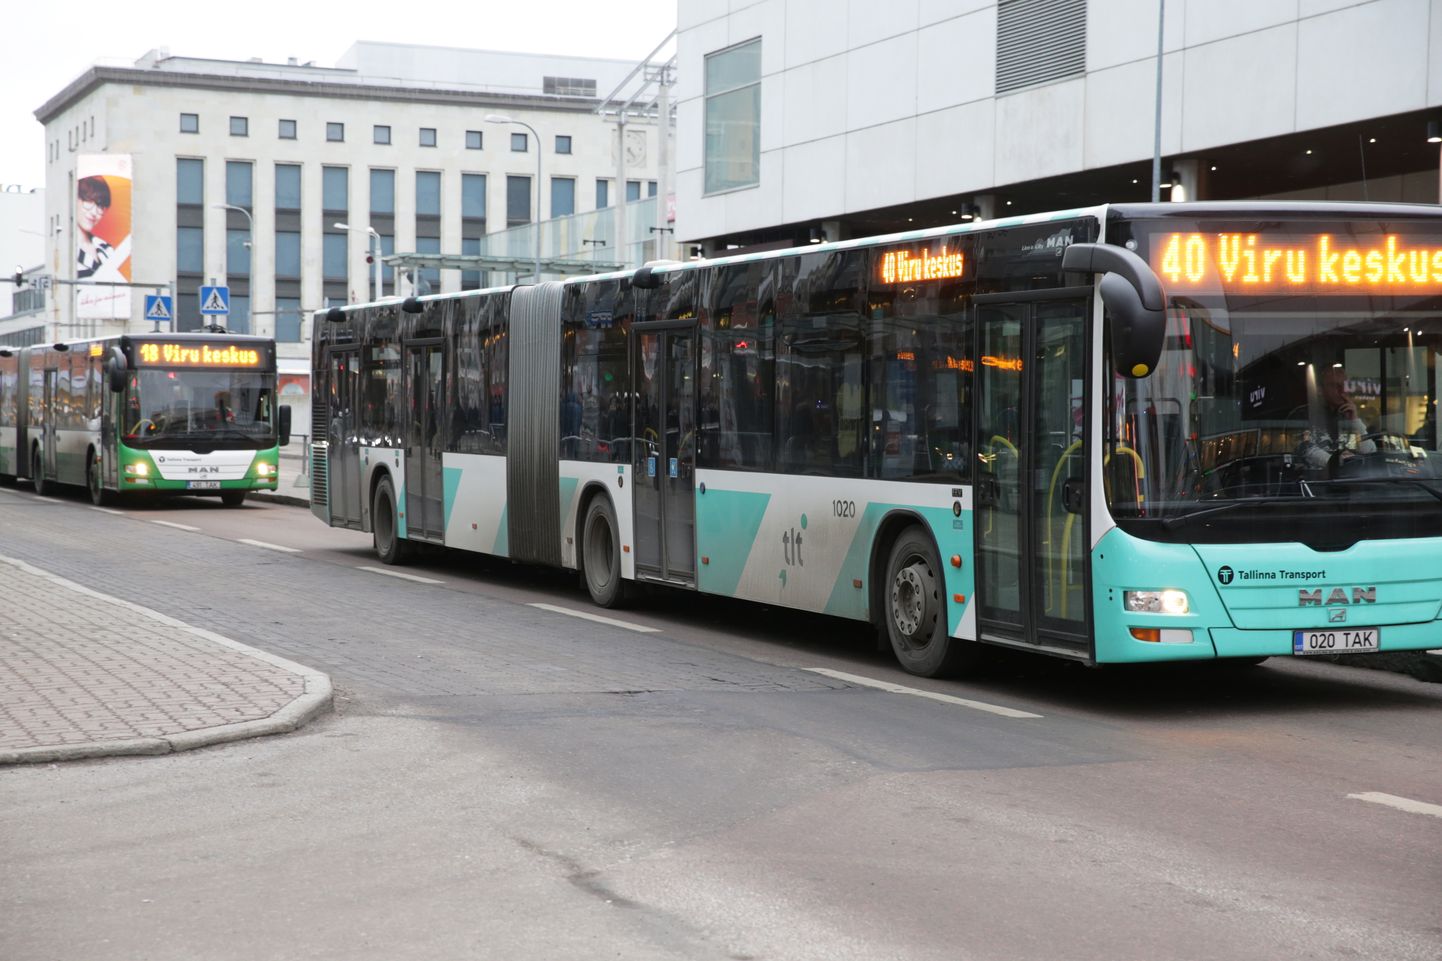 Недочеты в расписании и маршрутах мешают многим жителям Таллинна воспользоваться бесплатным общественным транспортом.